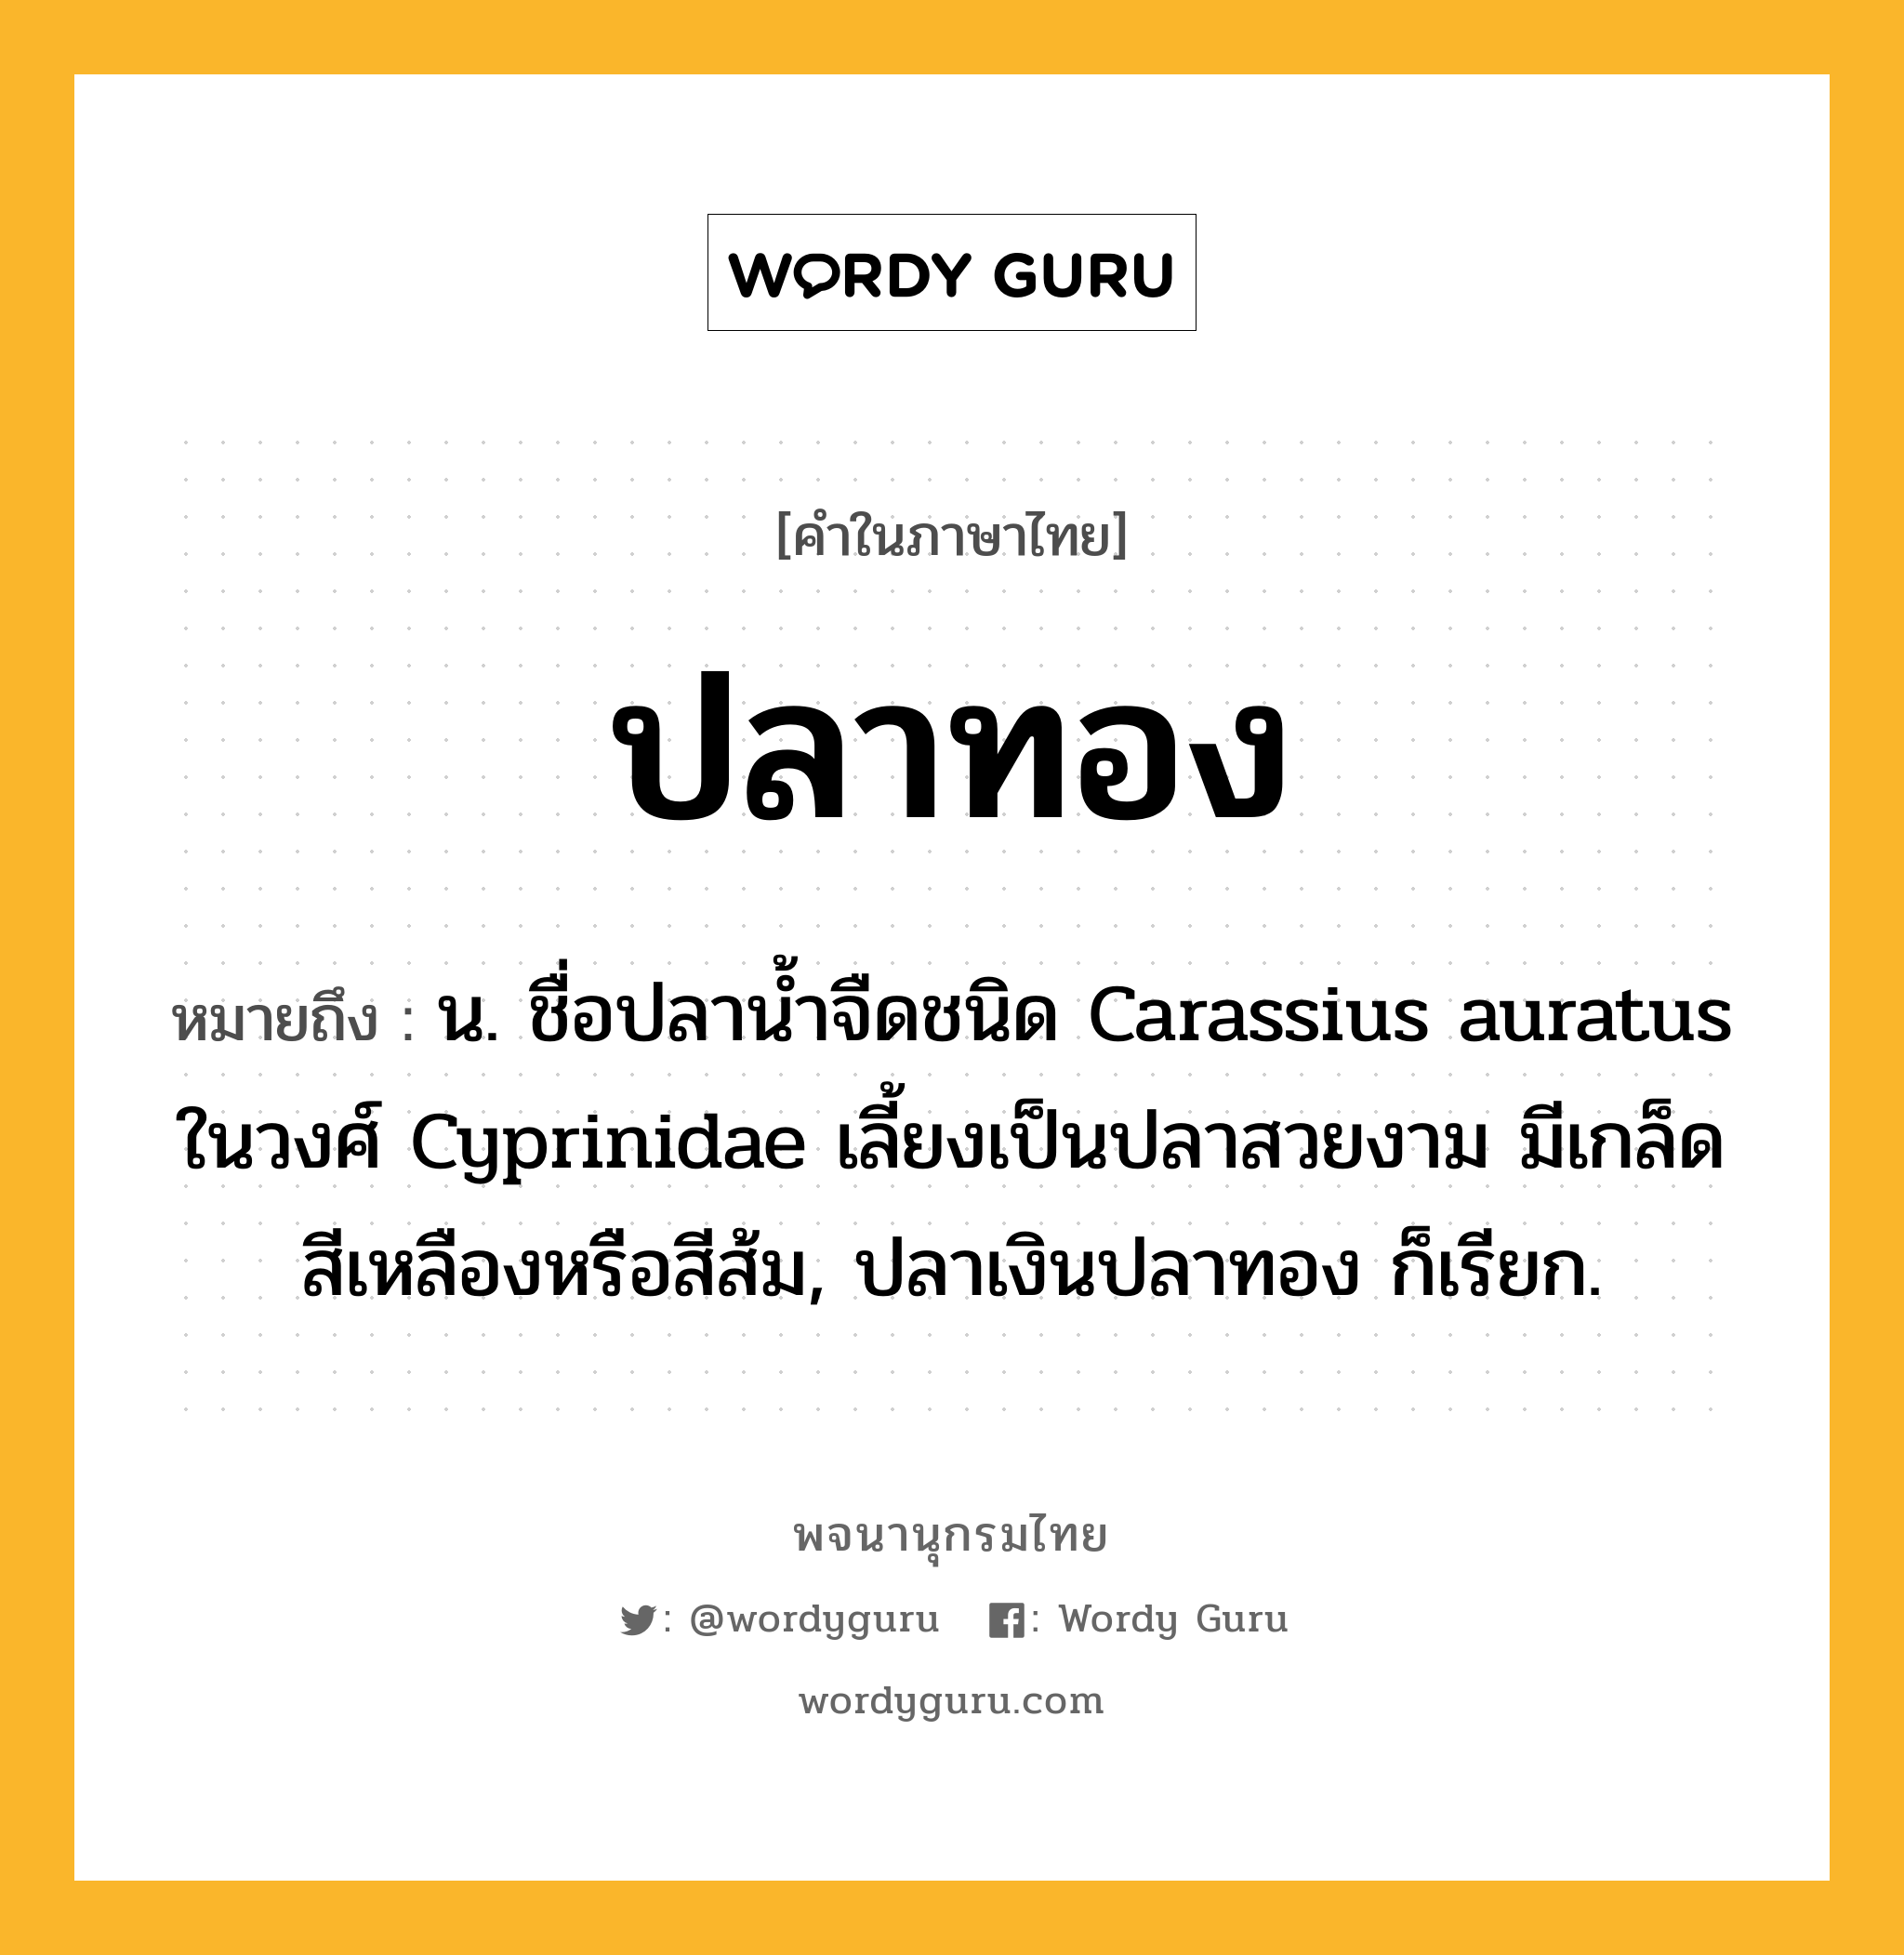 ปลาทอง ความหมาย หมายถึงอะไร?, คำในภาษาไทย ปลาทอง หมายถึง น. ชื่อปลาน้ำจืดชนิด Carassius auratus ในวงศ์ Cyprinidae เลี้ยงเป็นปลาสวยงาม มีเกล็ดสีเหลืองหรือสีส้ม, ปลาเงินปลาทอง ก็เรียก.